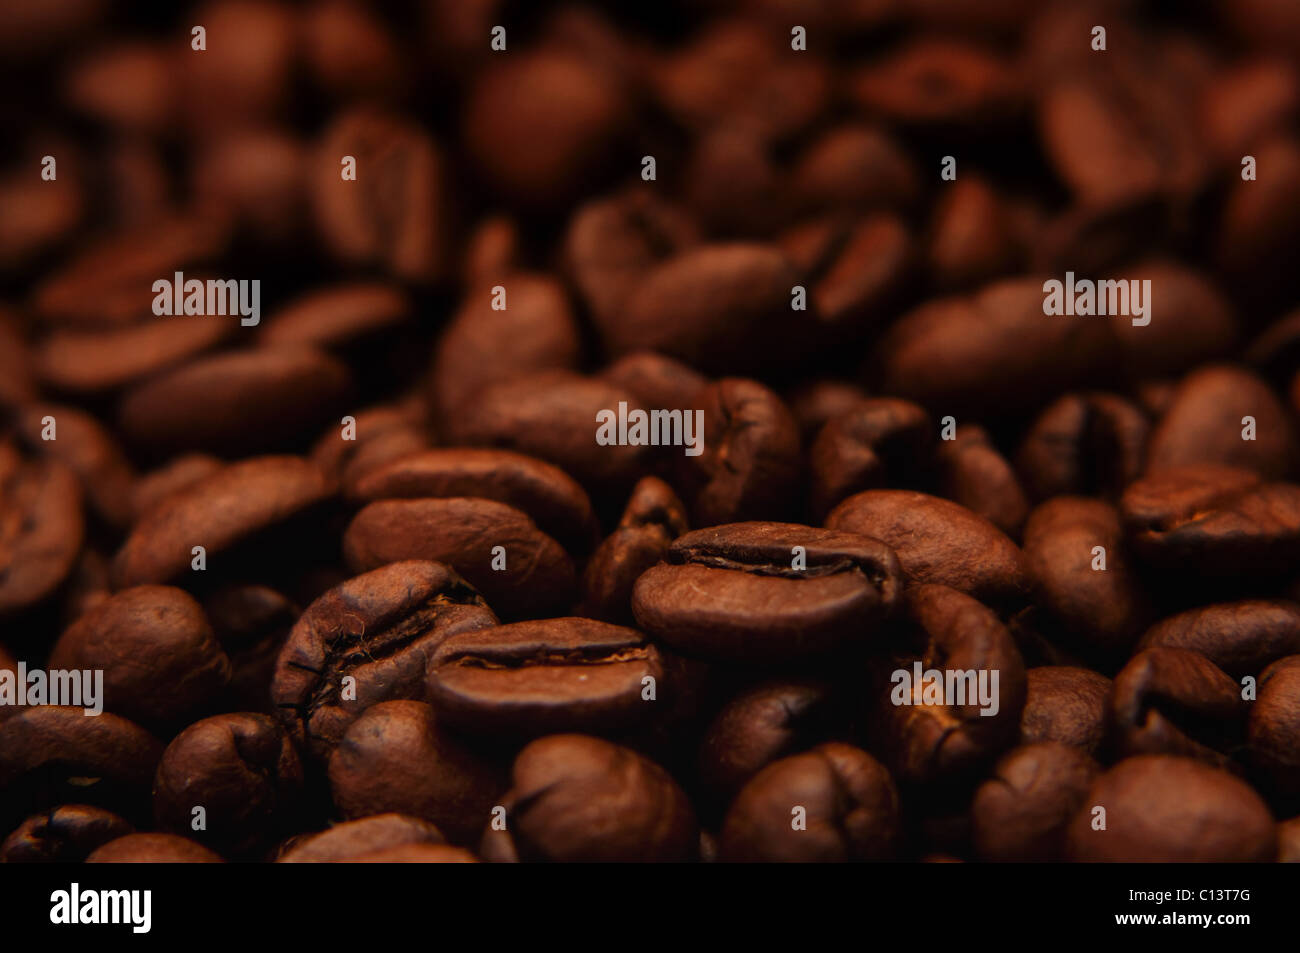 Beau brun, les grains de café, près de l'image Banque D'Images